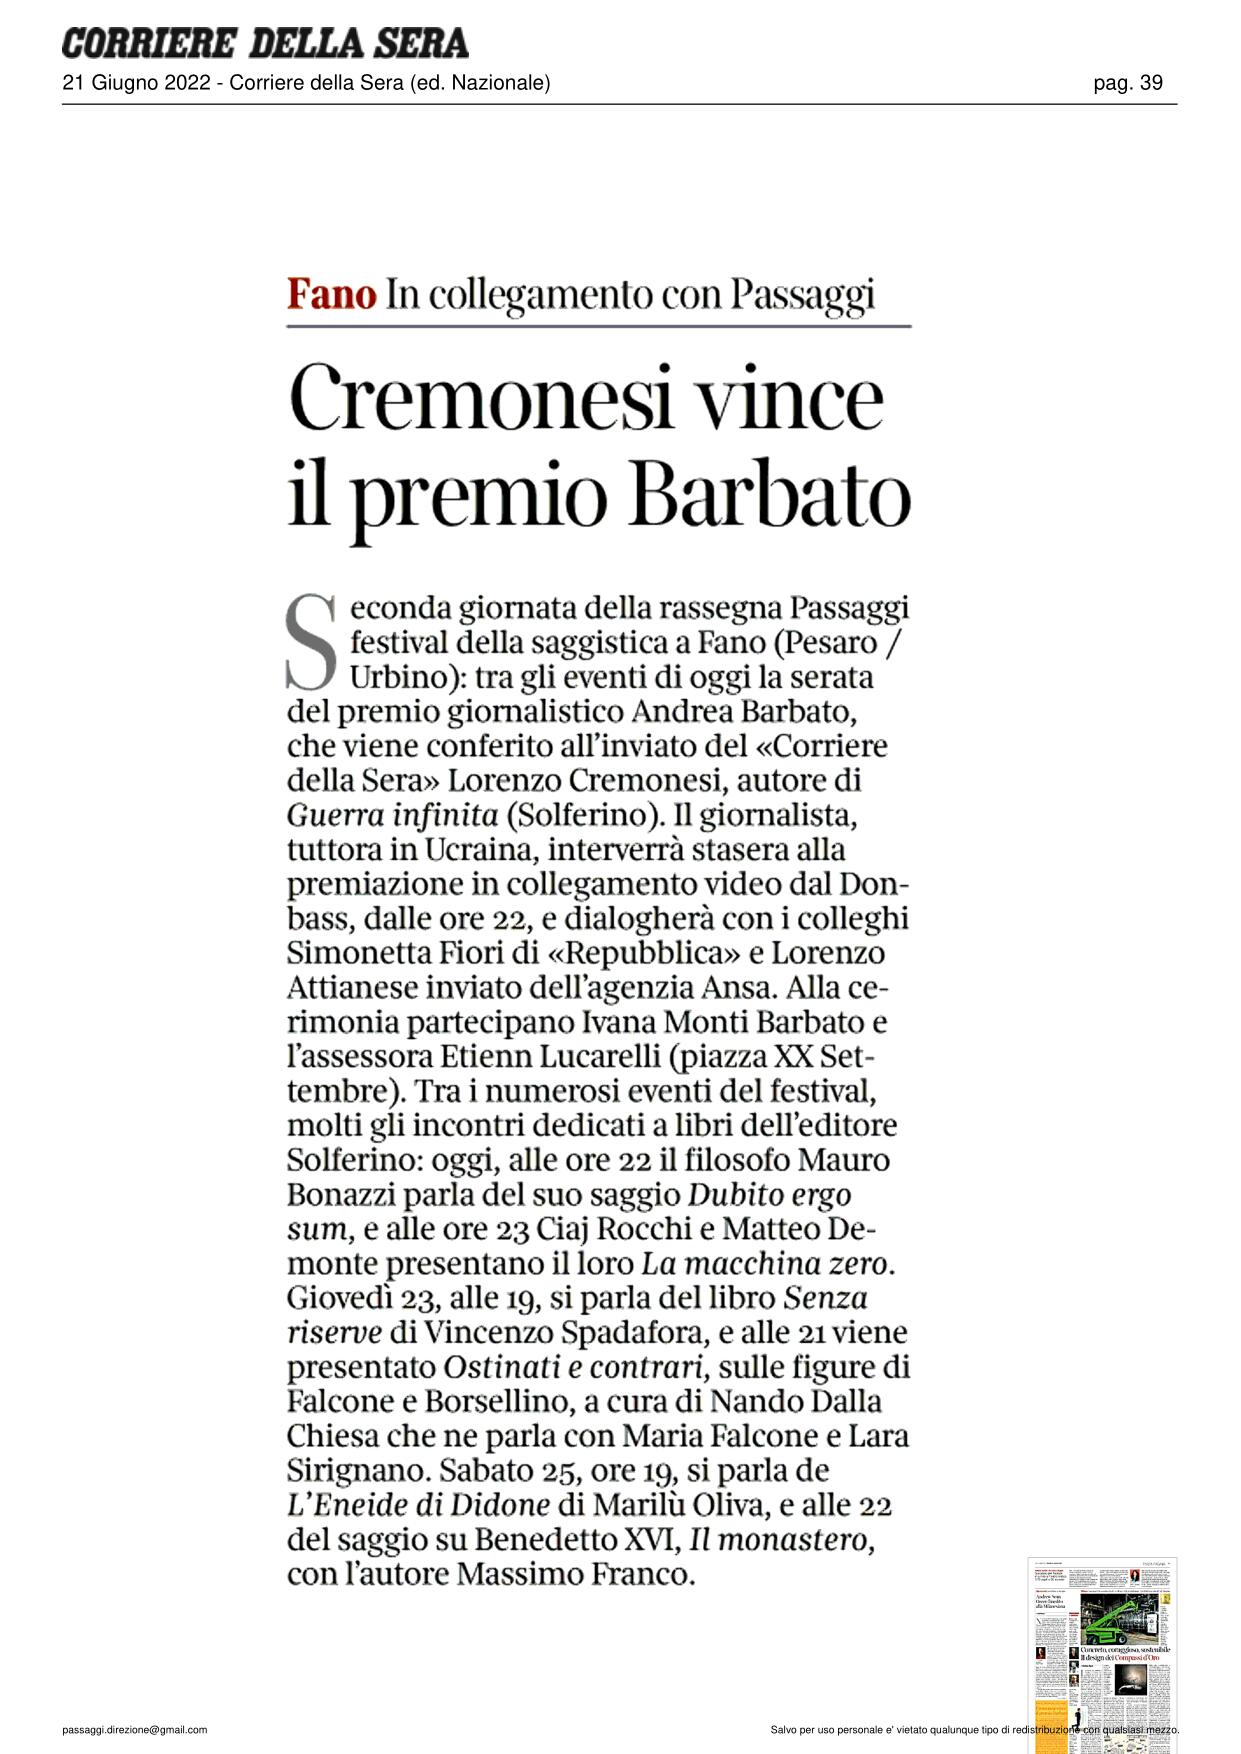 Corriere-della-Sera-ed.-Nazionale-Cremonesi-vince-il-premio-Barbato